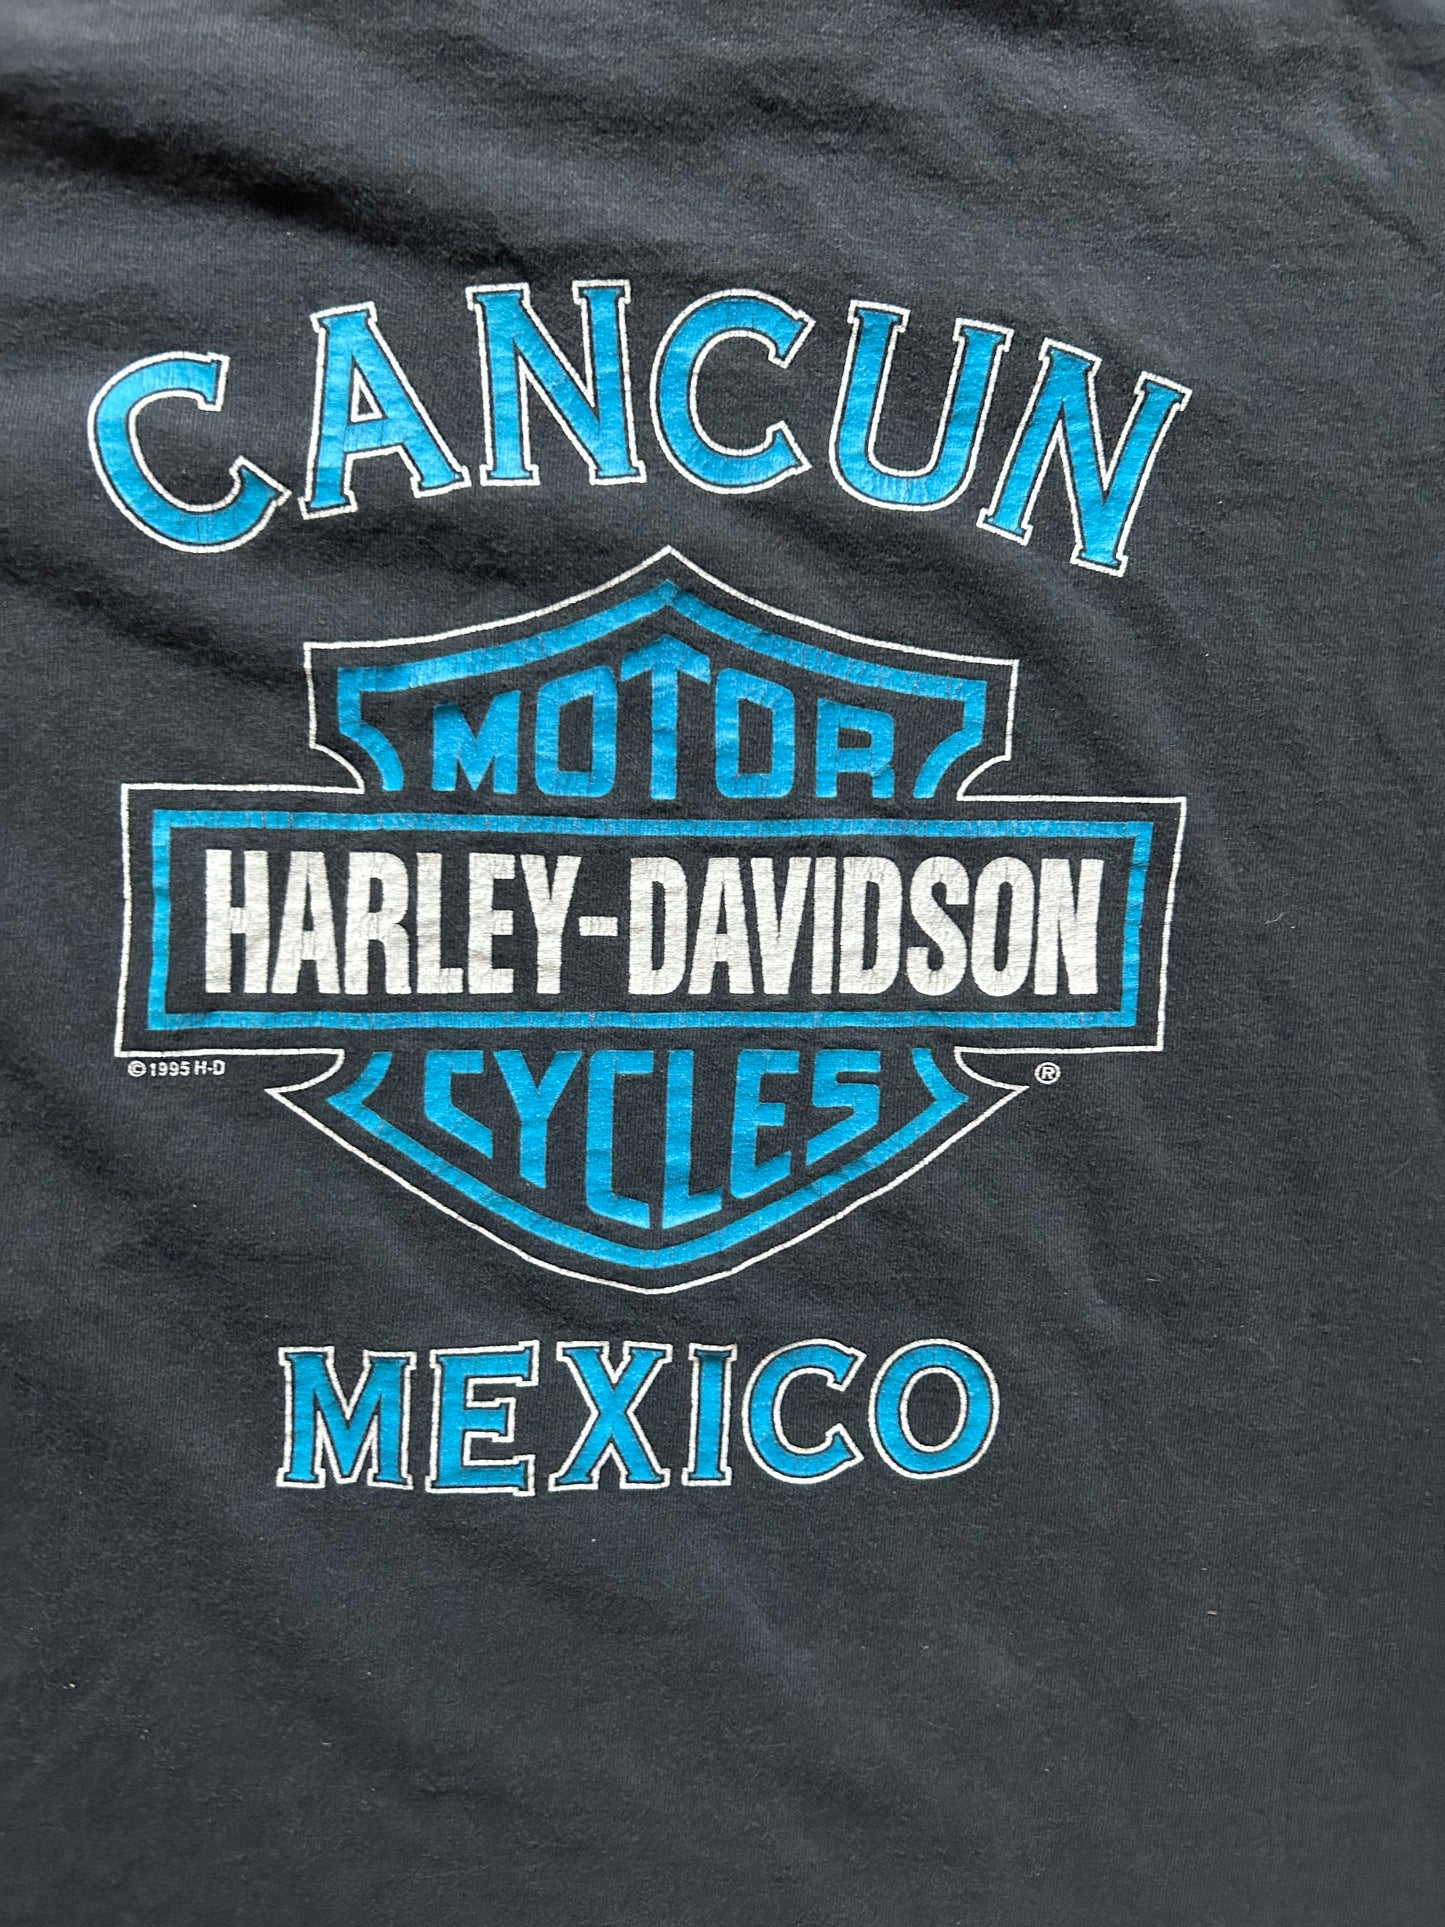 1995 Harley Cancun Tee Size - L